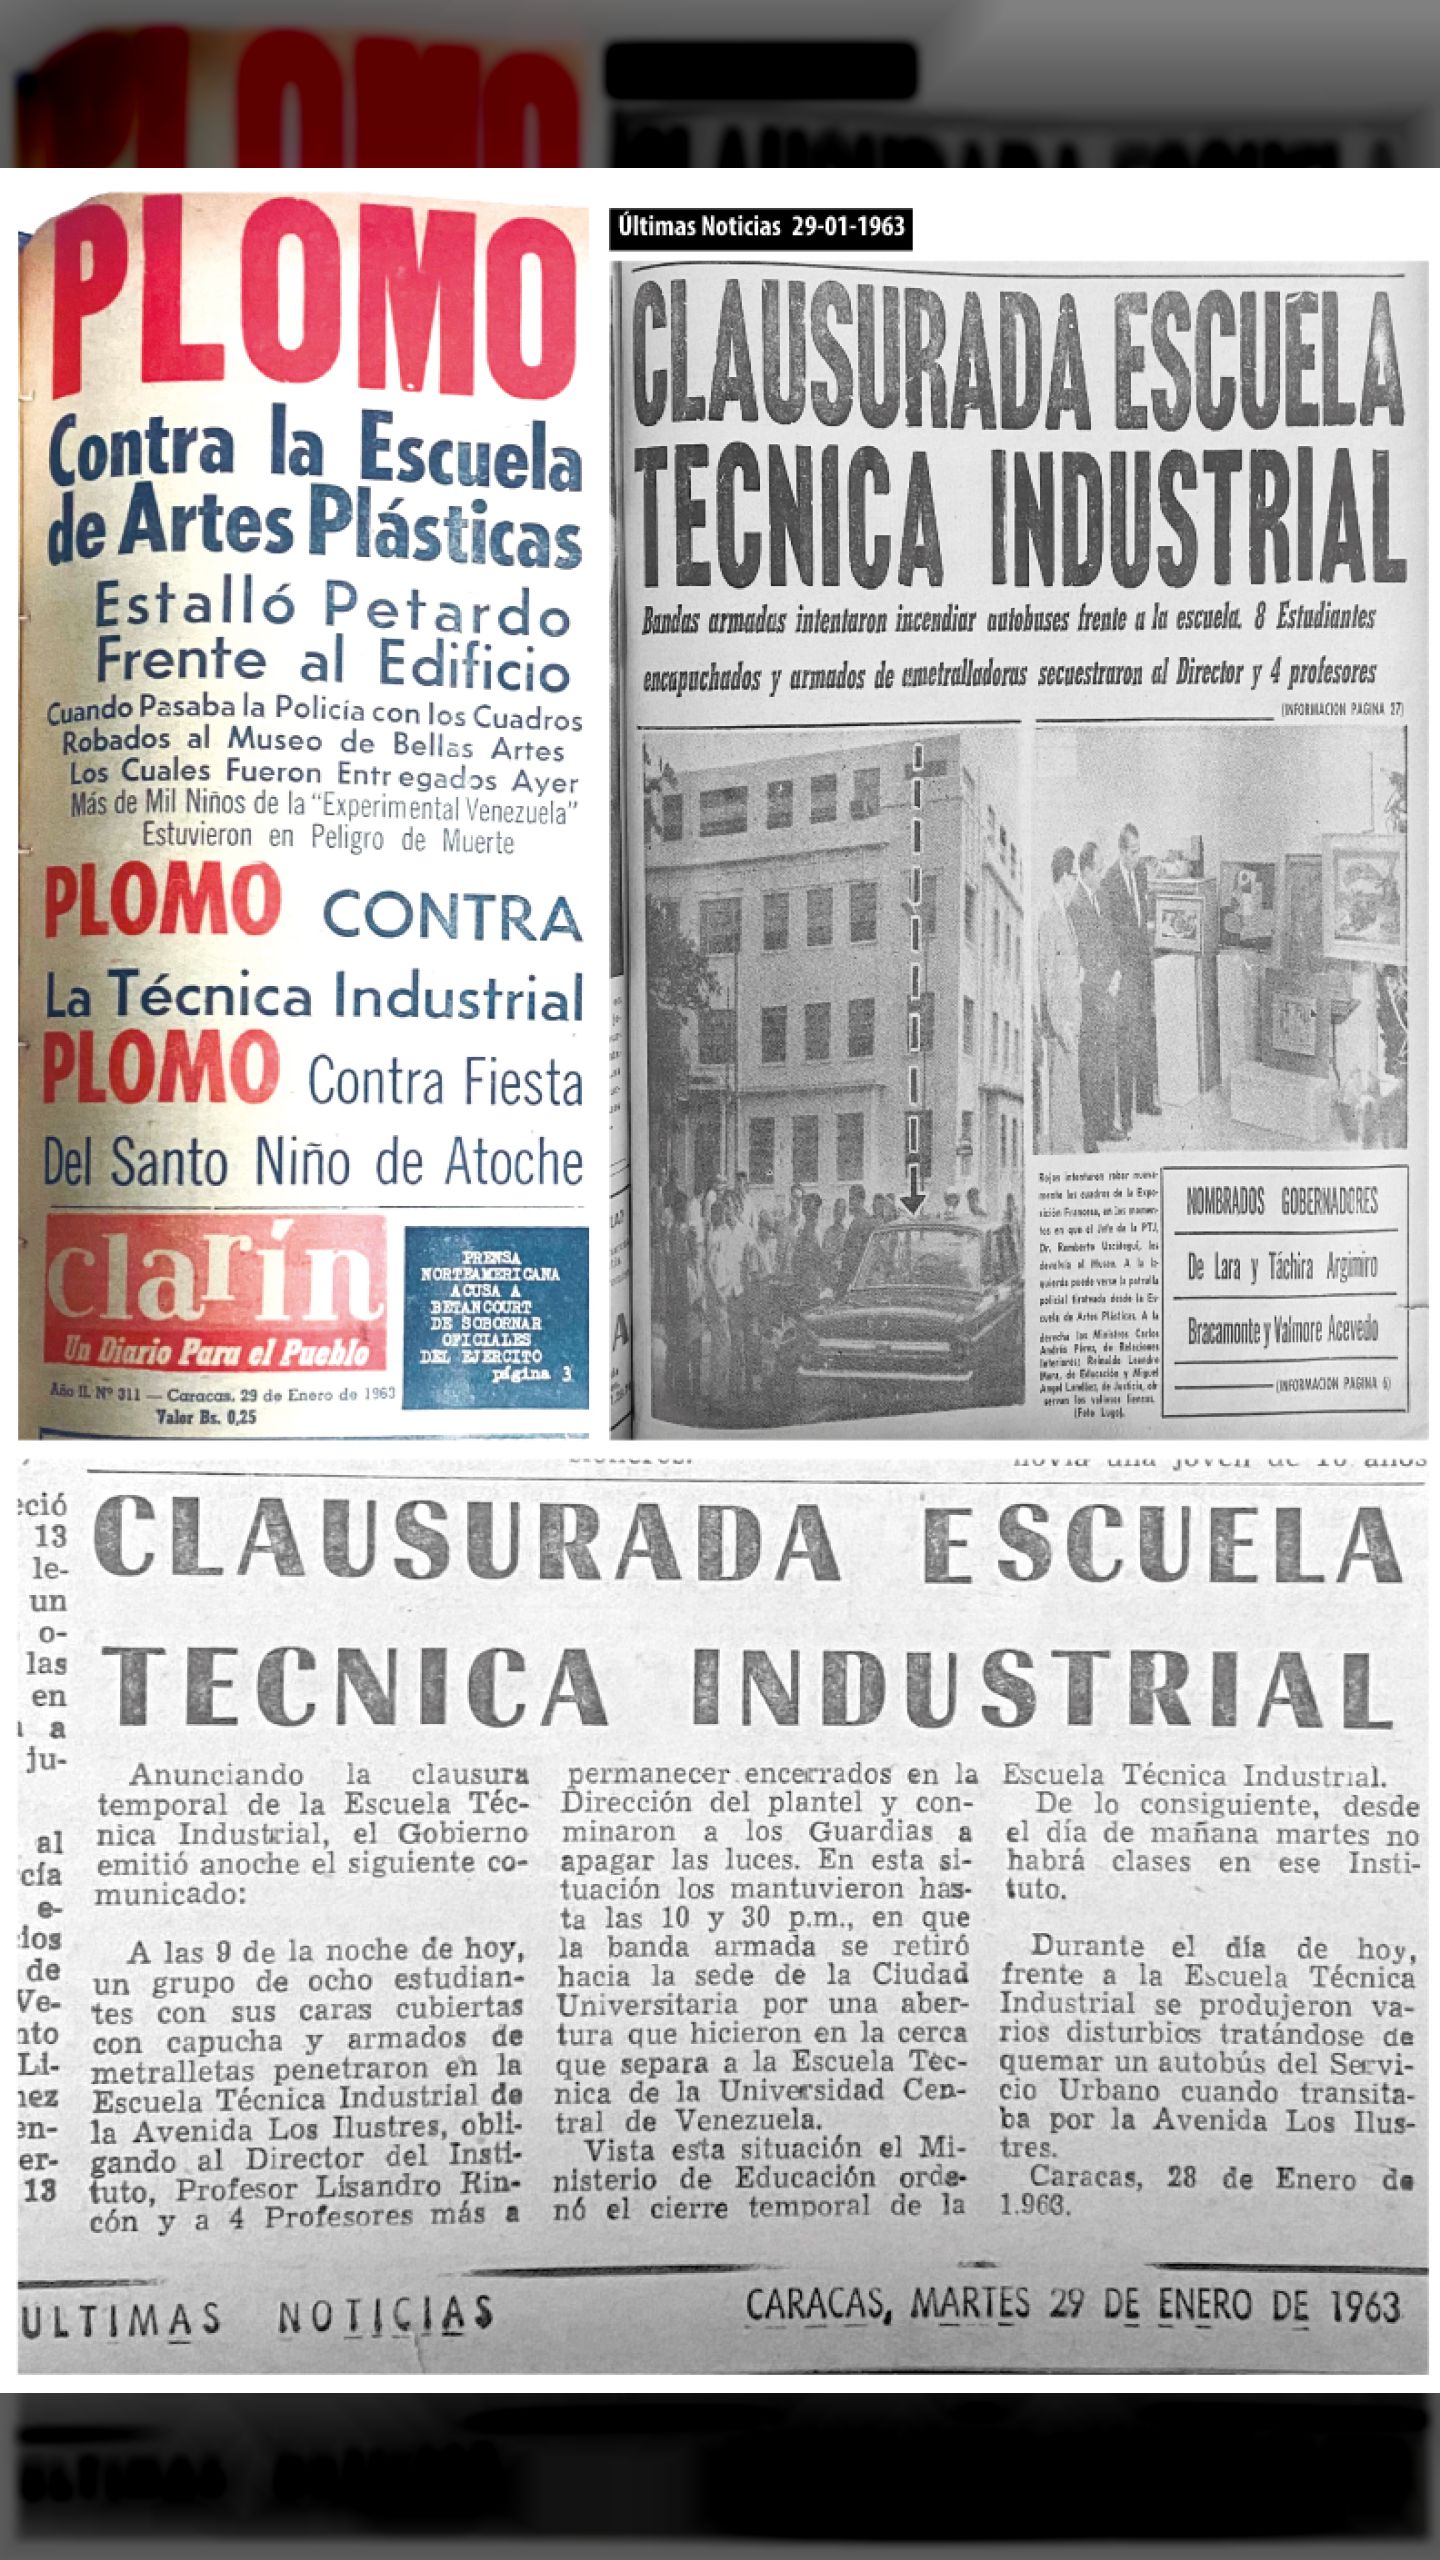 CLAUSURADA ESCUELA TÉCNICA INDUSTRIAL (ÚLTIMAS NOTICIAS y CLARÍN, 29 de enero 1963)